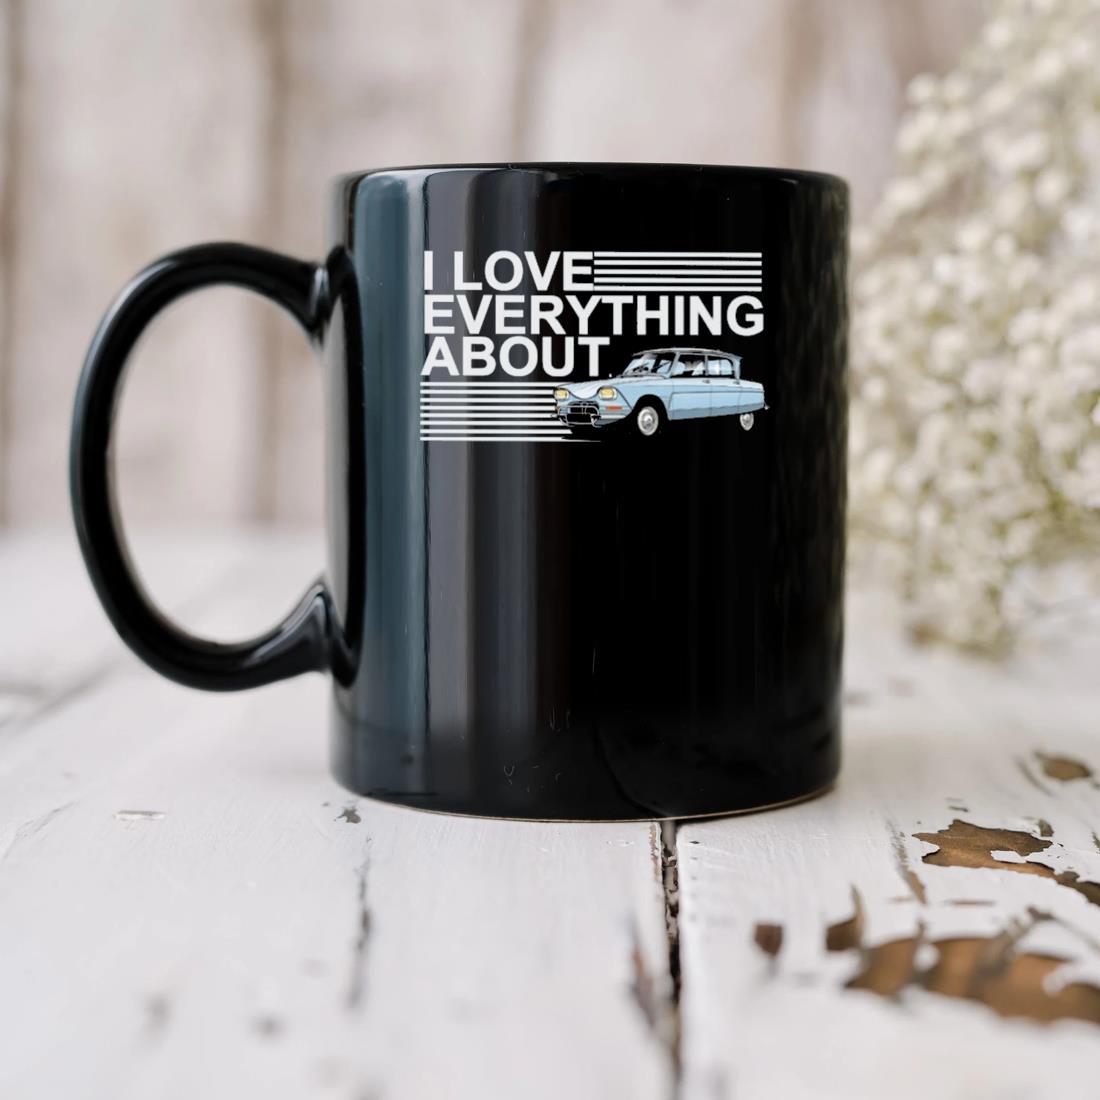 I Love Everything About Mug